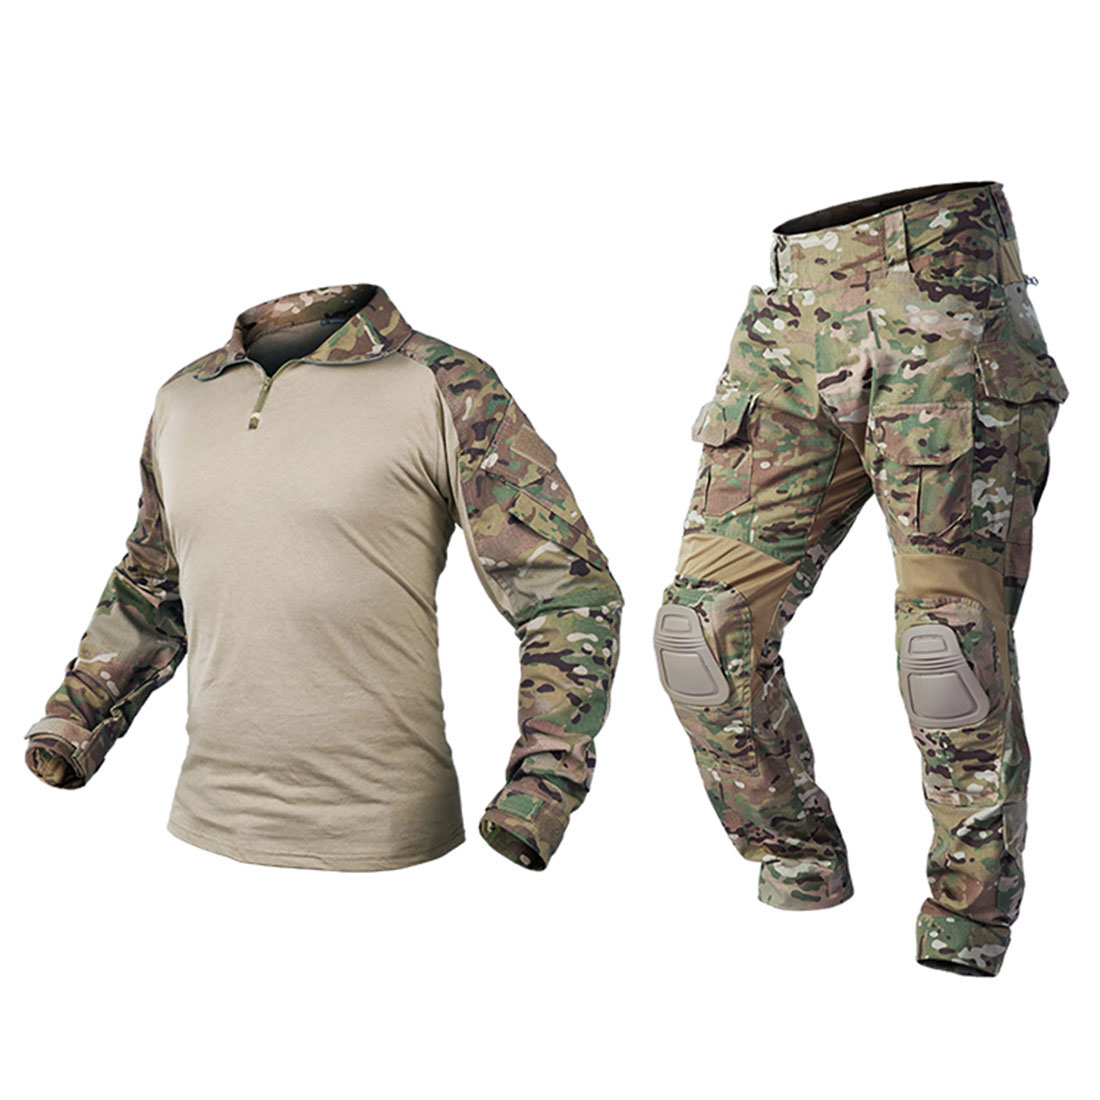 Airsoft Tactical bdu Uniform Emerson Combat Gen3 Suit Shirt Pants Multicam Black 